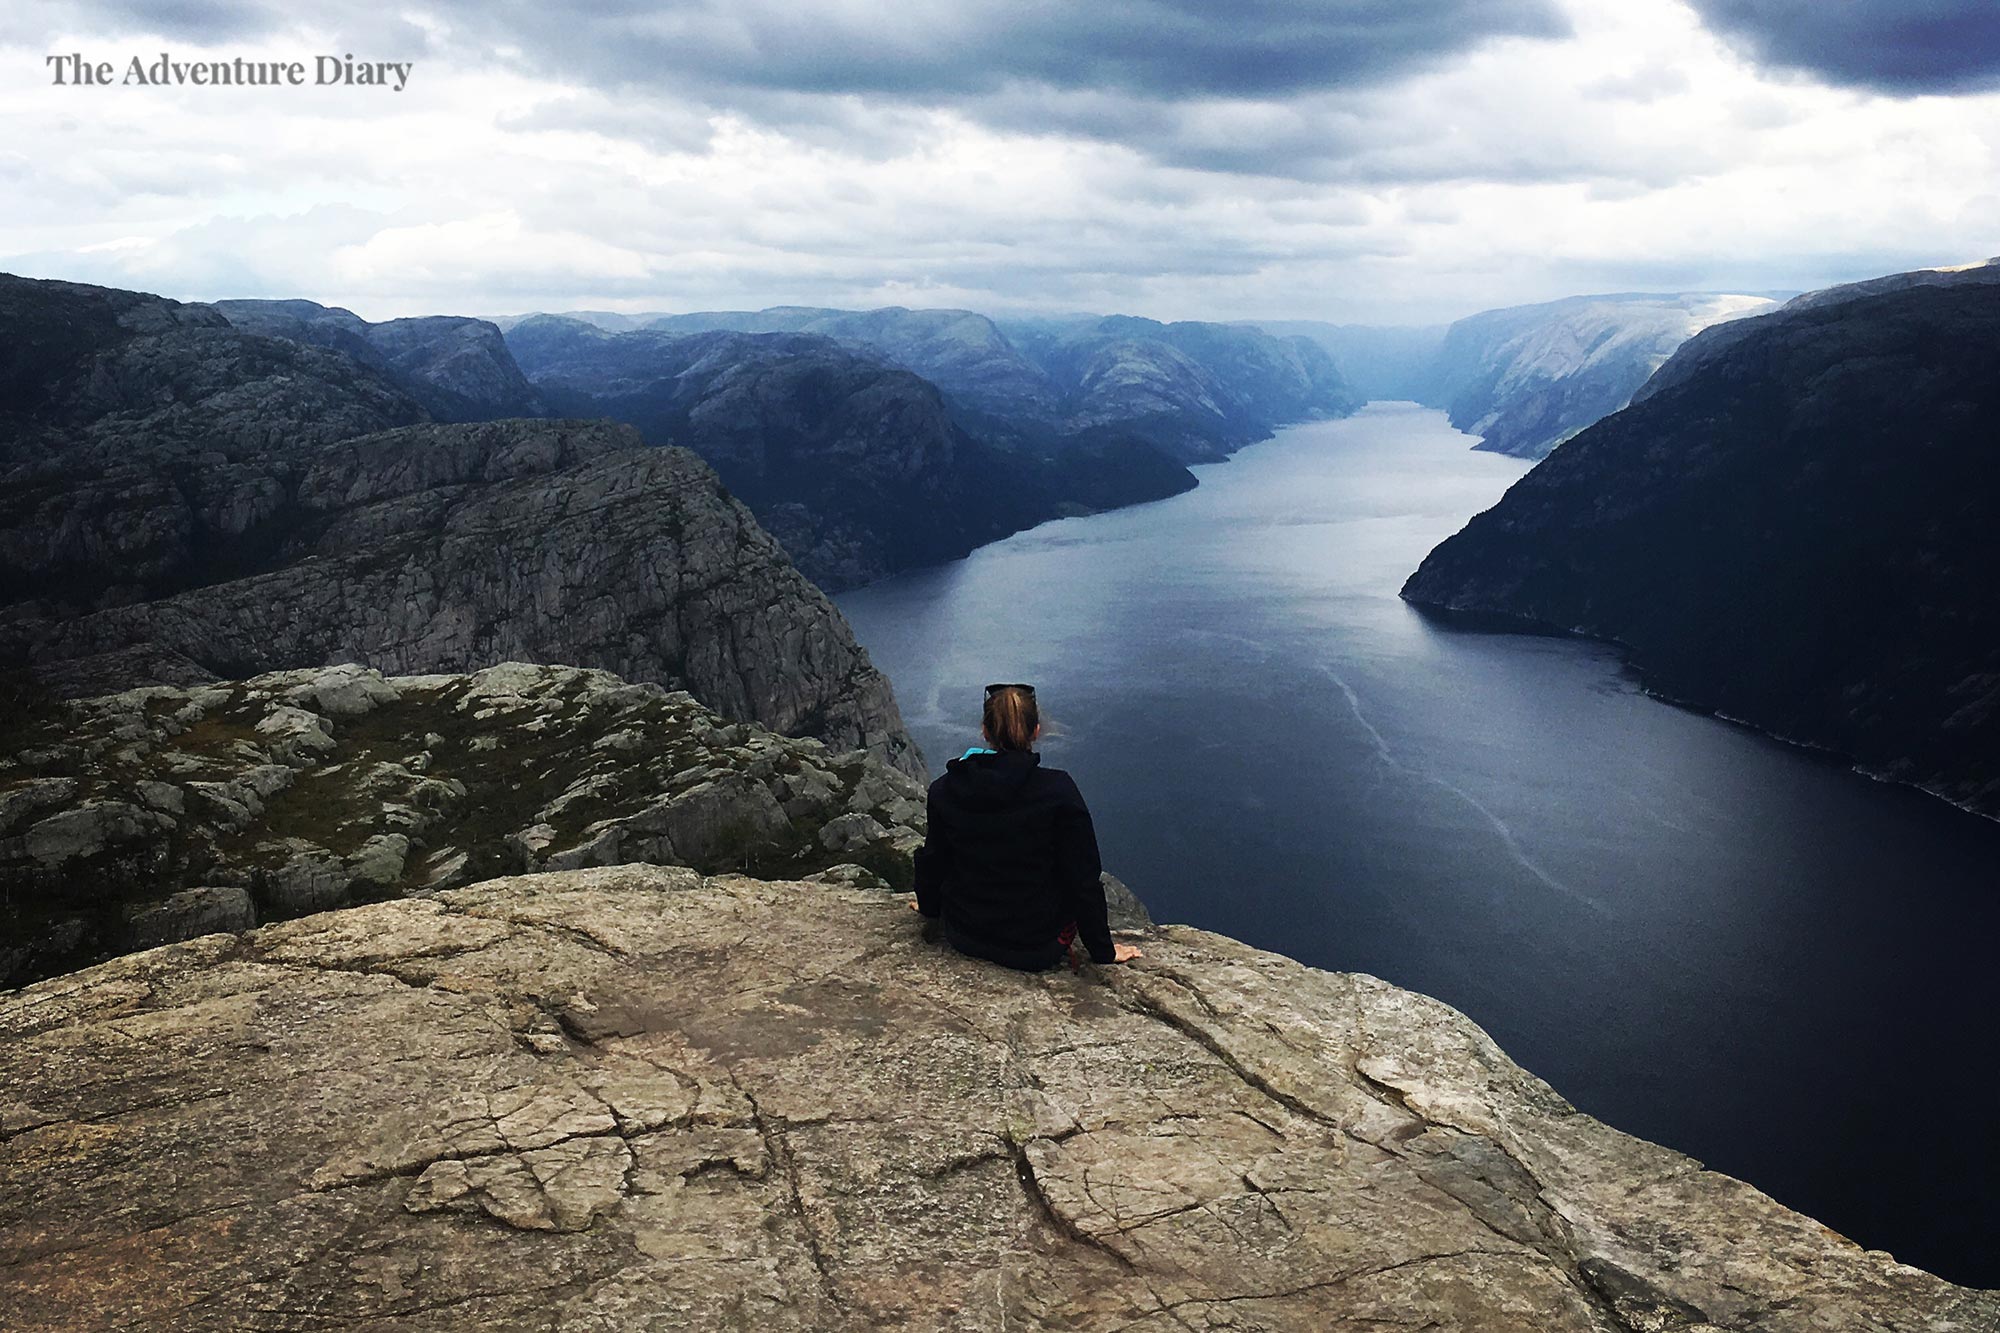 The view from Priekestolen rock, Norway